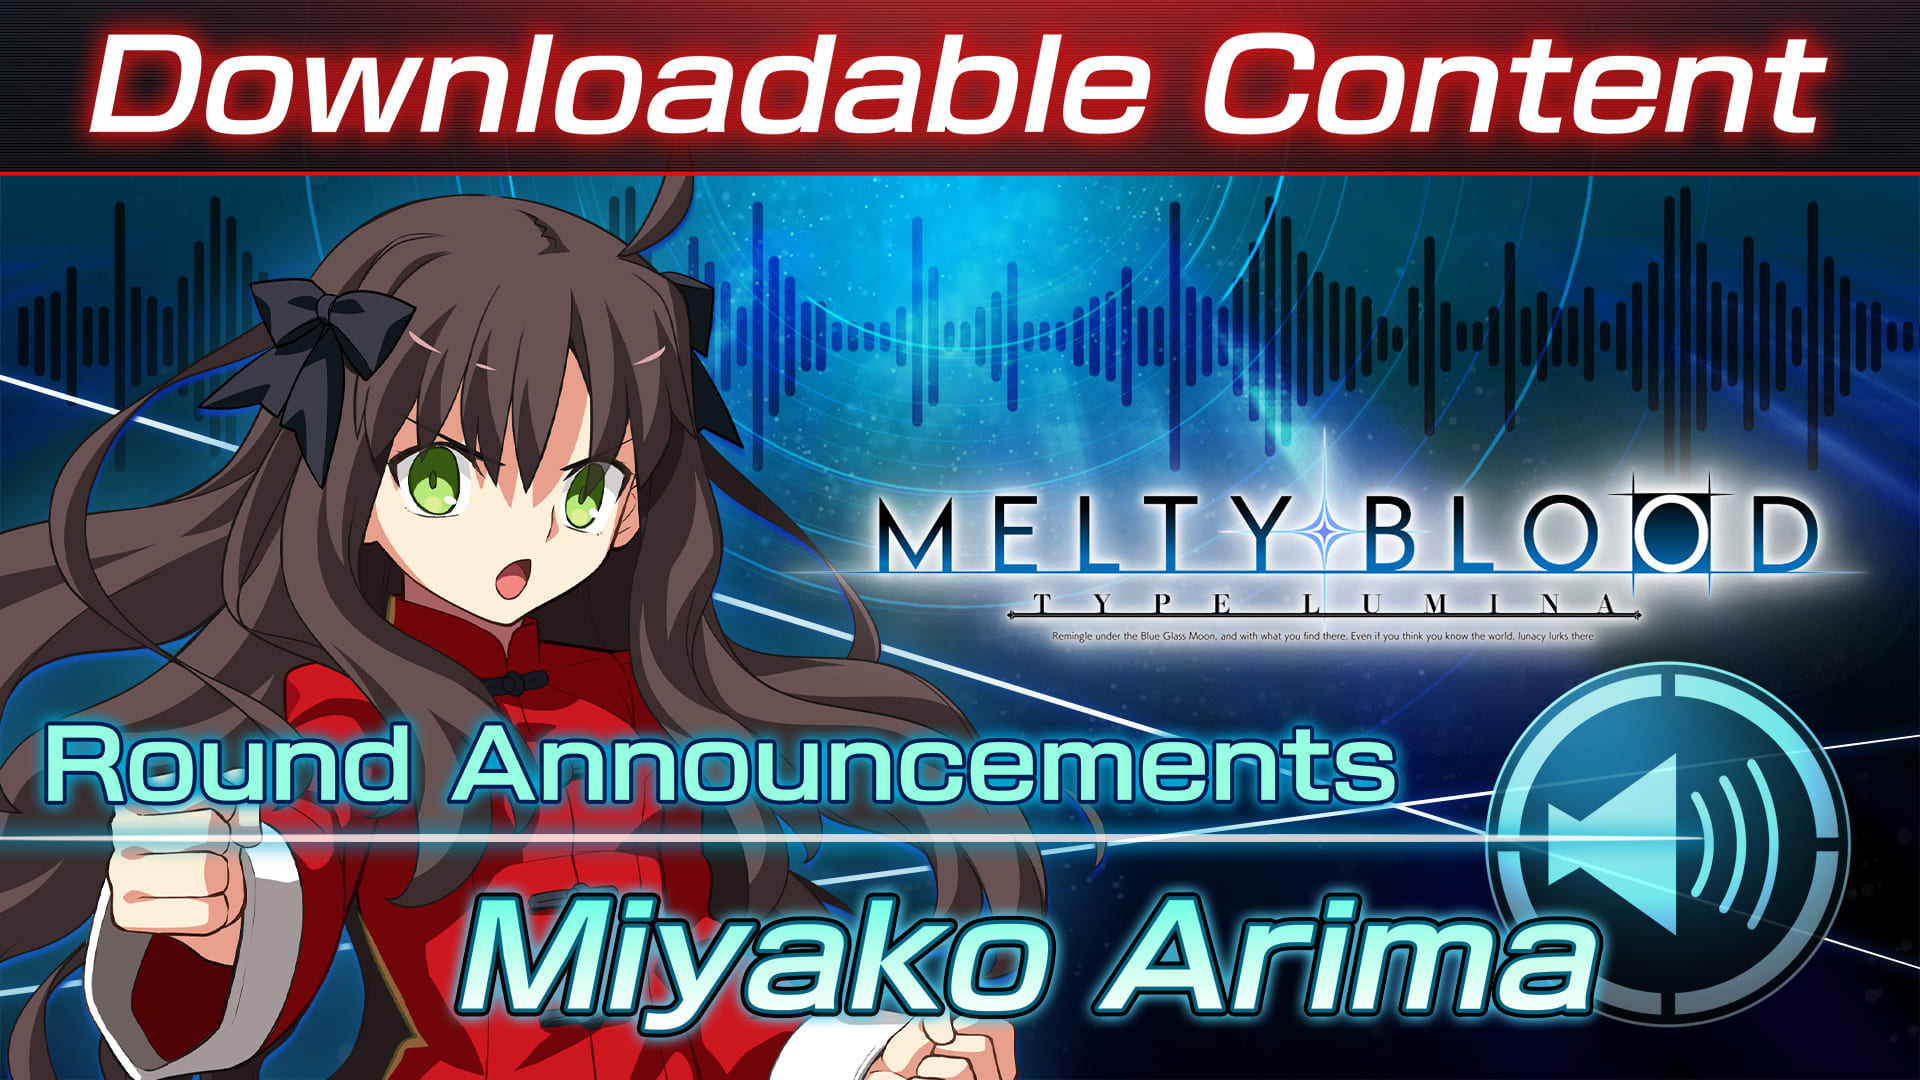 Conteúdo adicional "Voz de anúncio do round: Miyako Arima"